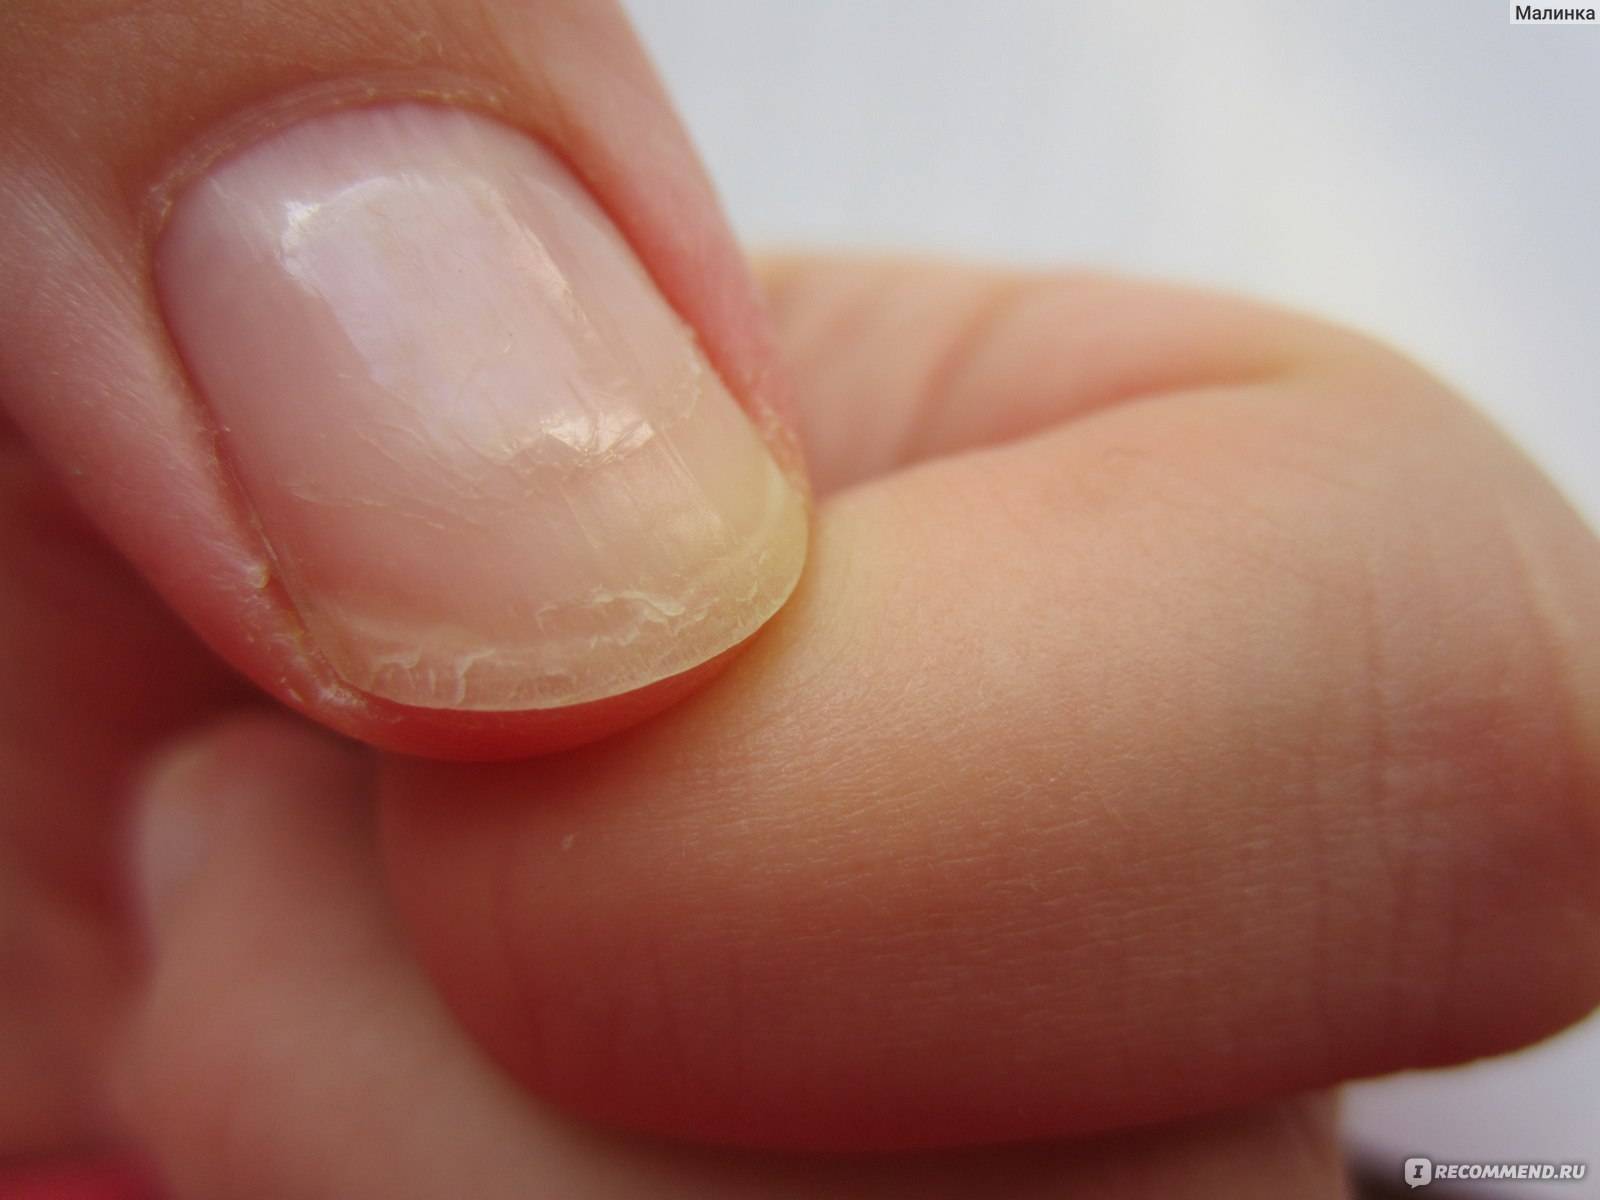 Ногти слоятся что делать в домашних. Онихошизис ногтевой пластины.